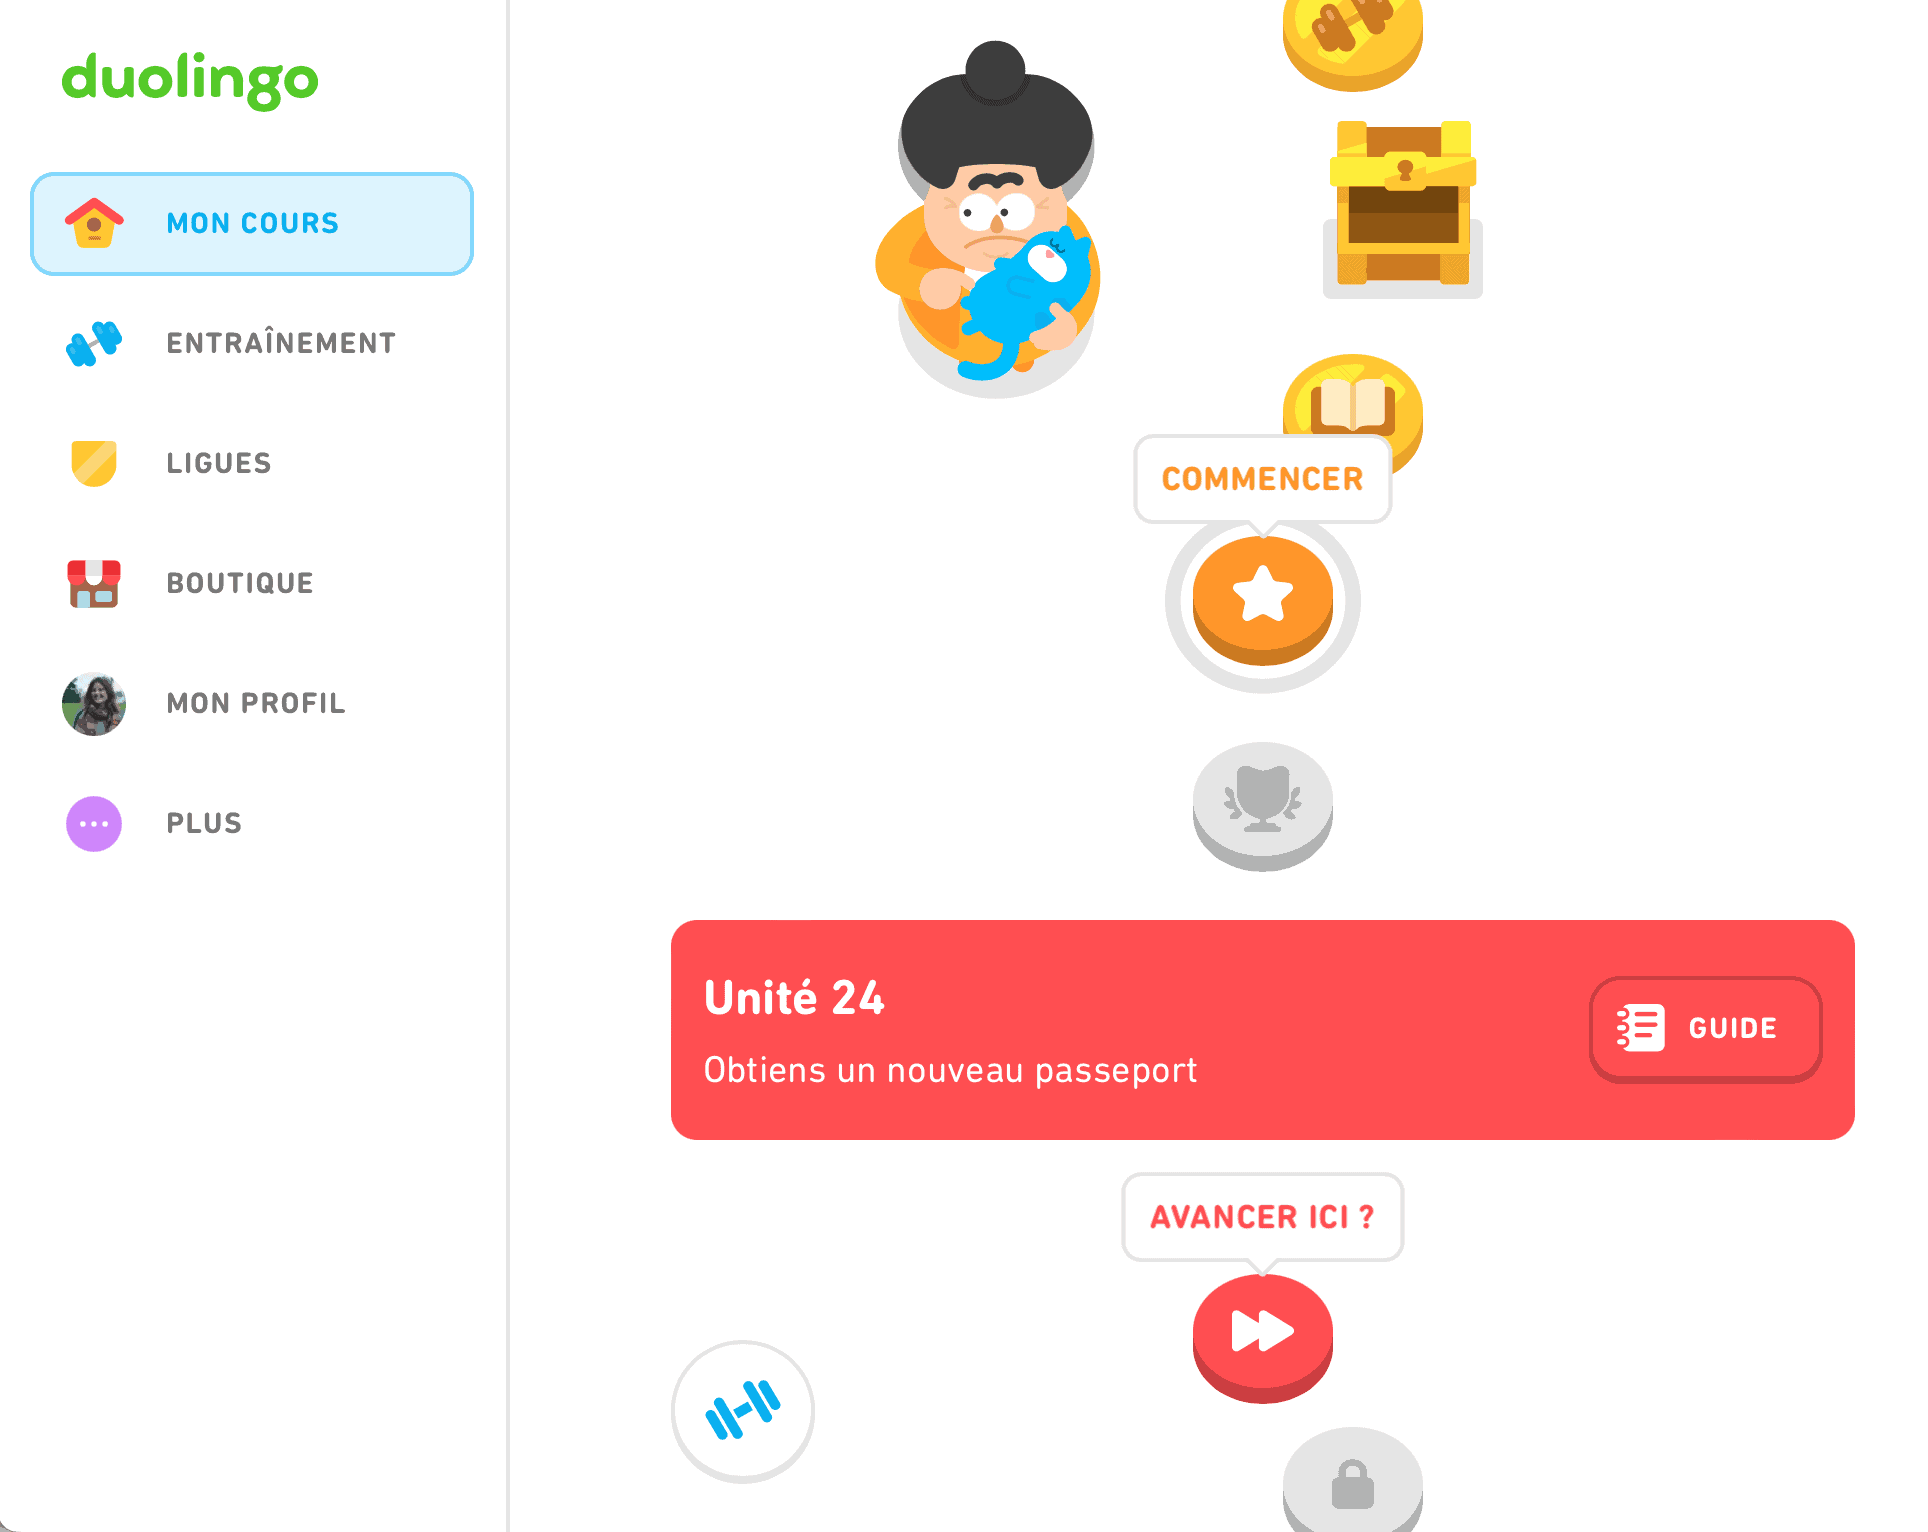 Interface Duolingo. Vision du cours où l’on est et de ceux qui arrivent sous la forme de boutons/ éléments graphiques similaires aux jeux vidéo.